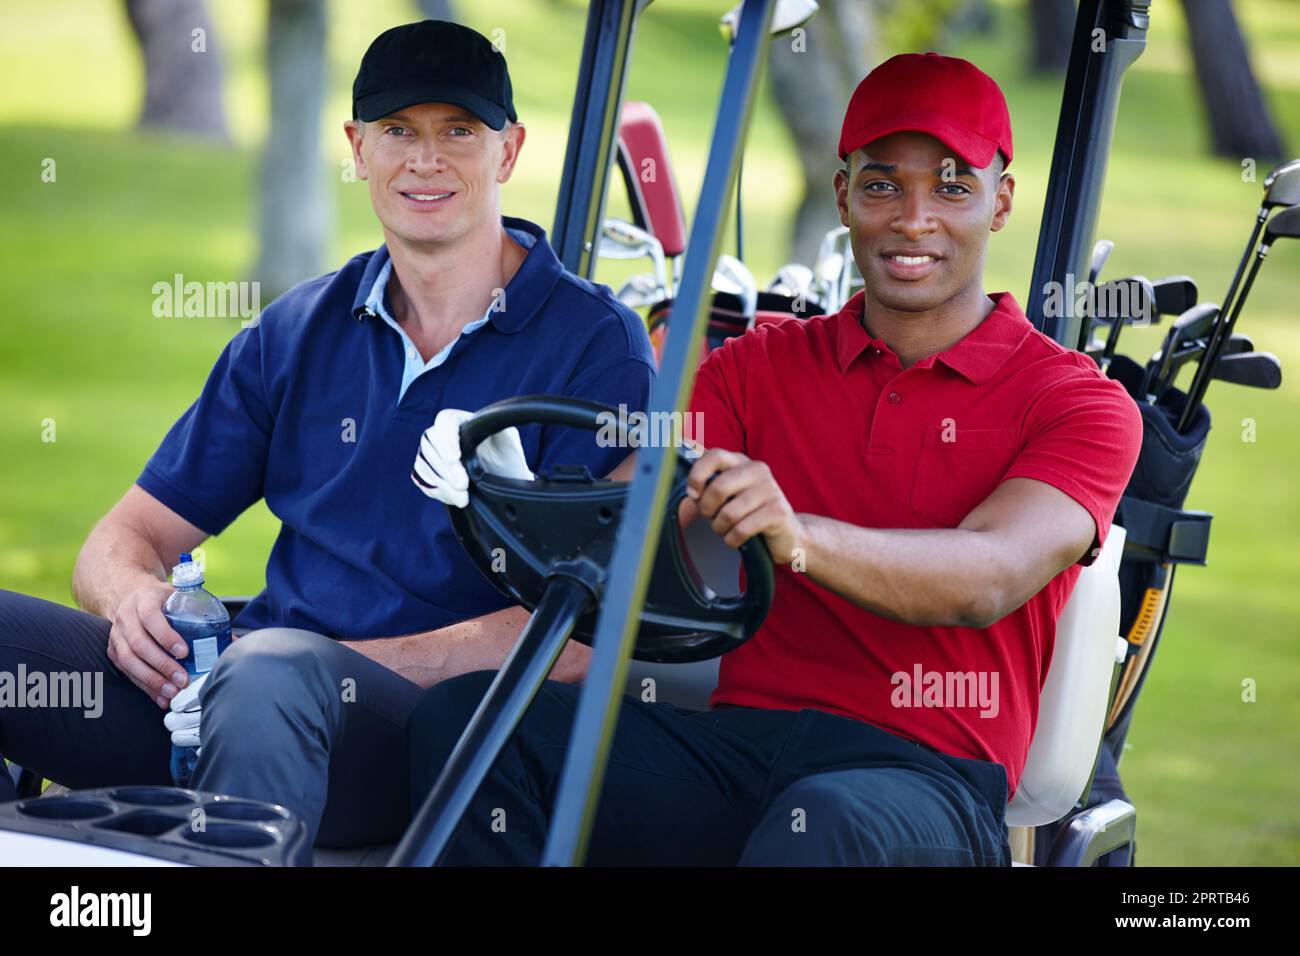 Fuori per un viaggio con gli amici. Ritratto di due uomini che guidano un cart su un campo da golf. Foto Stock